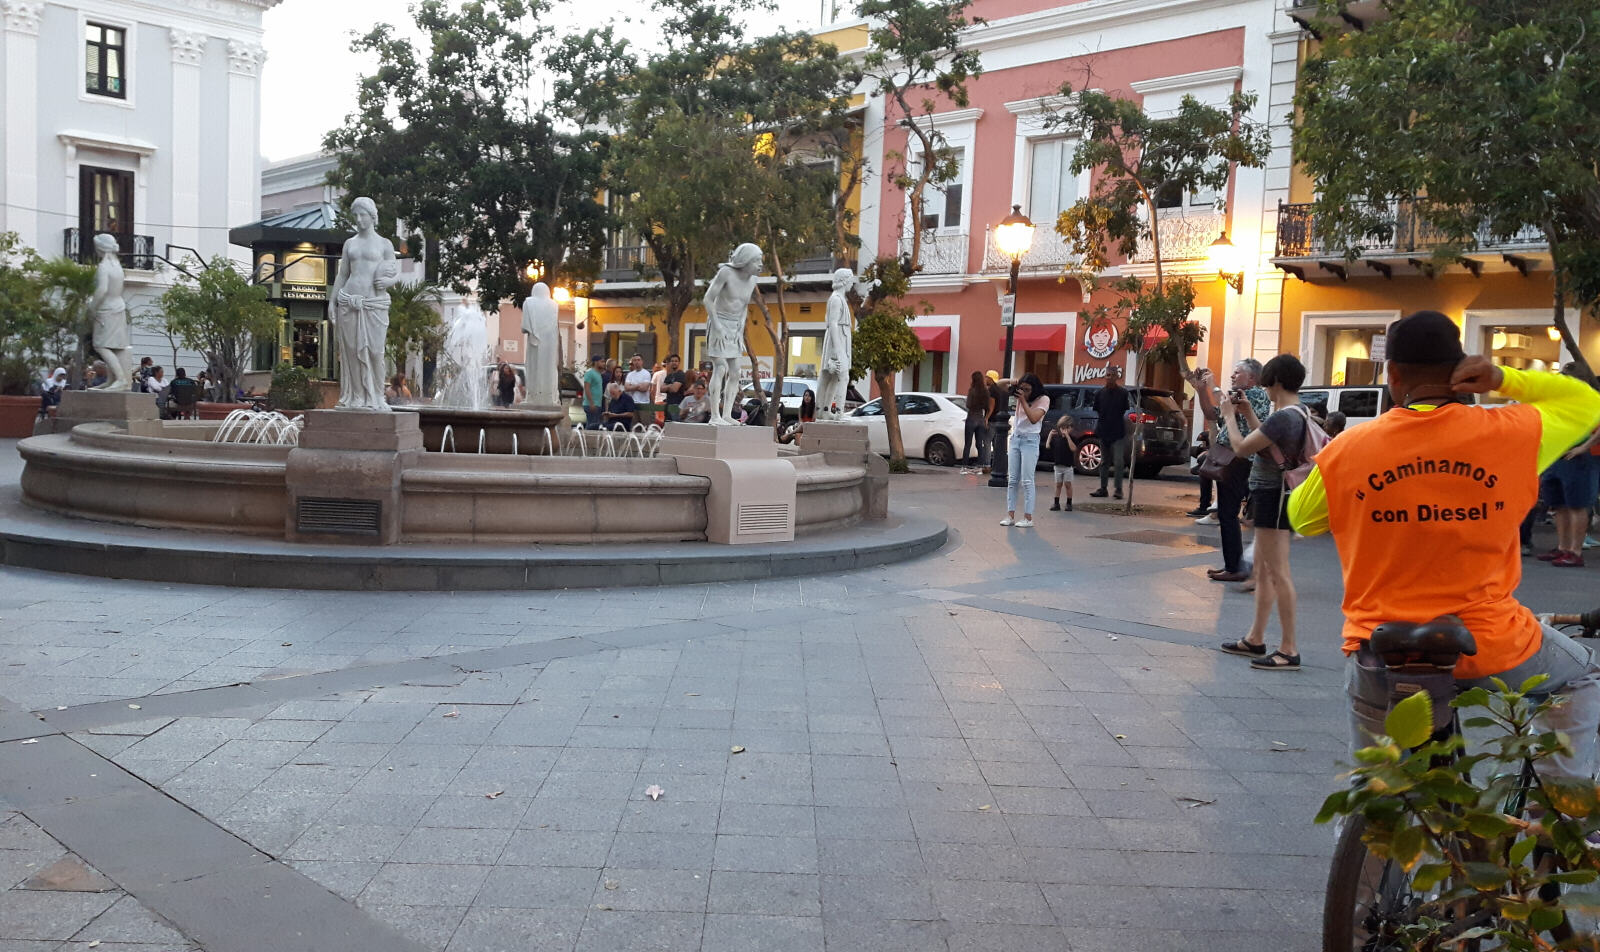 Statues in Plaza de Armas, San Juan, Puerto Rico